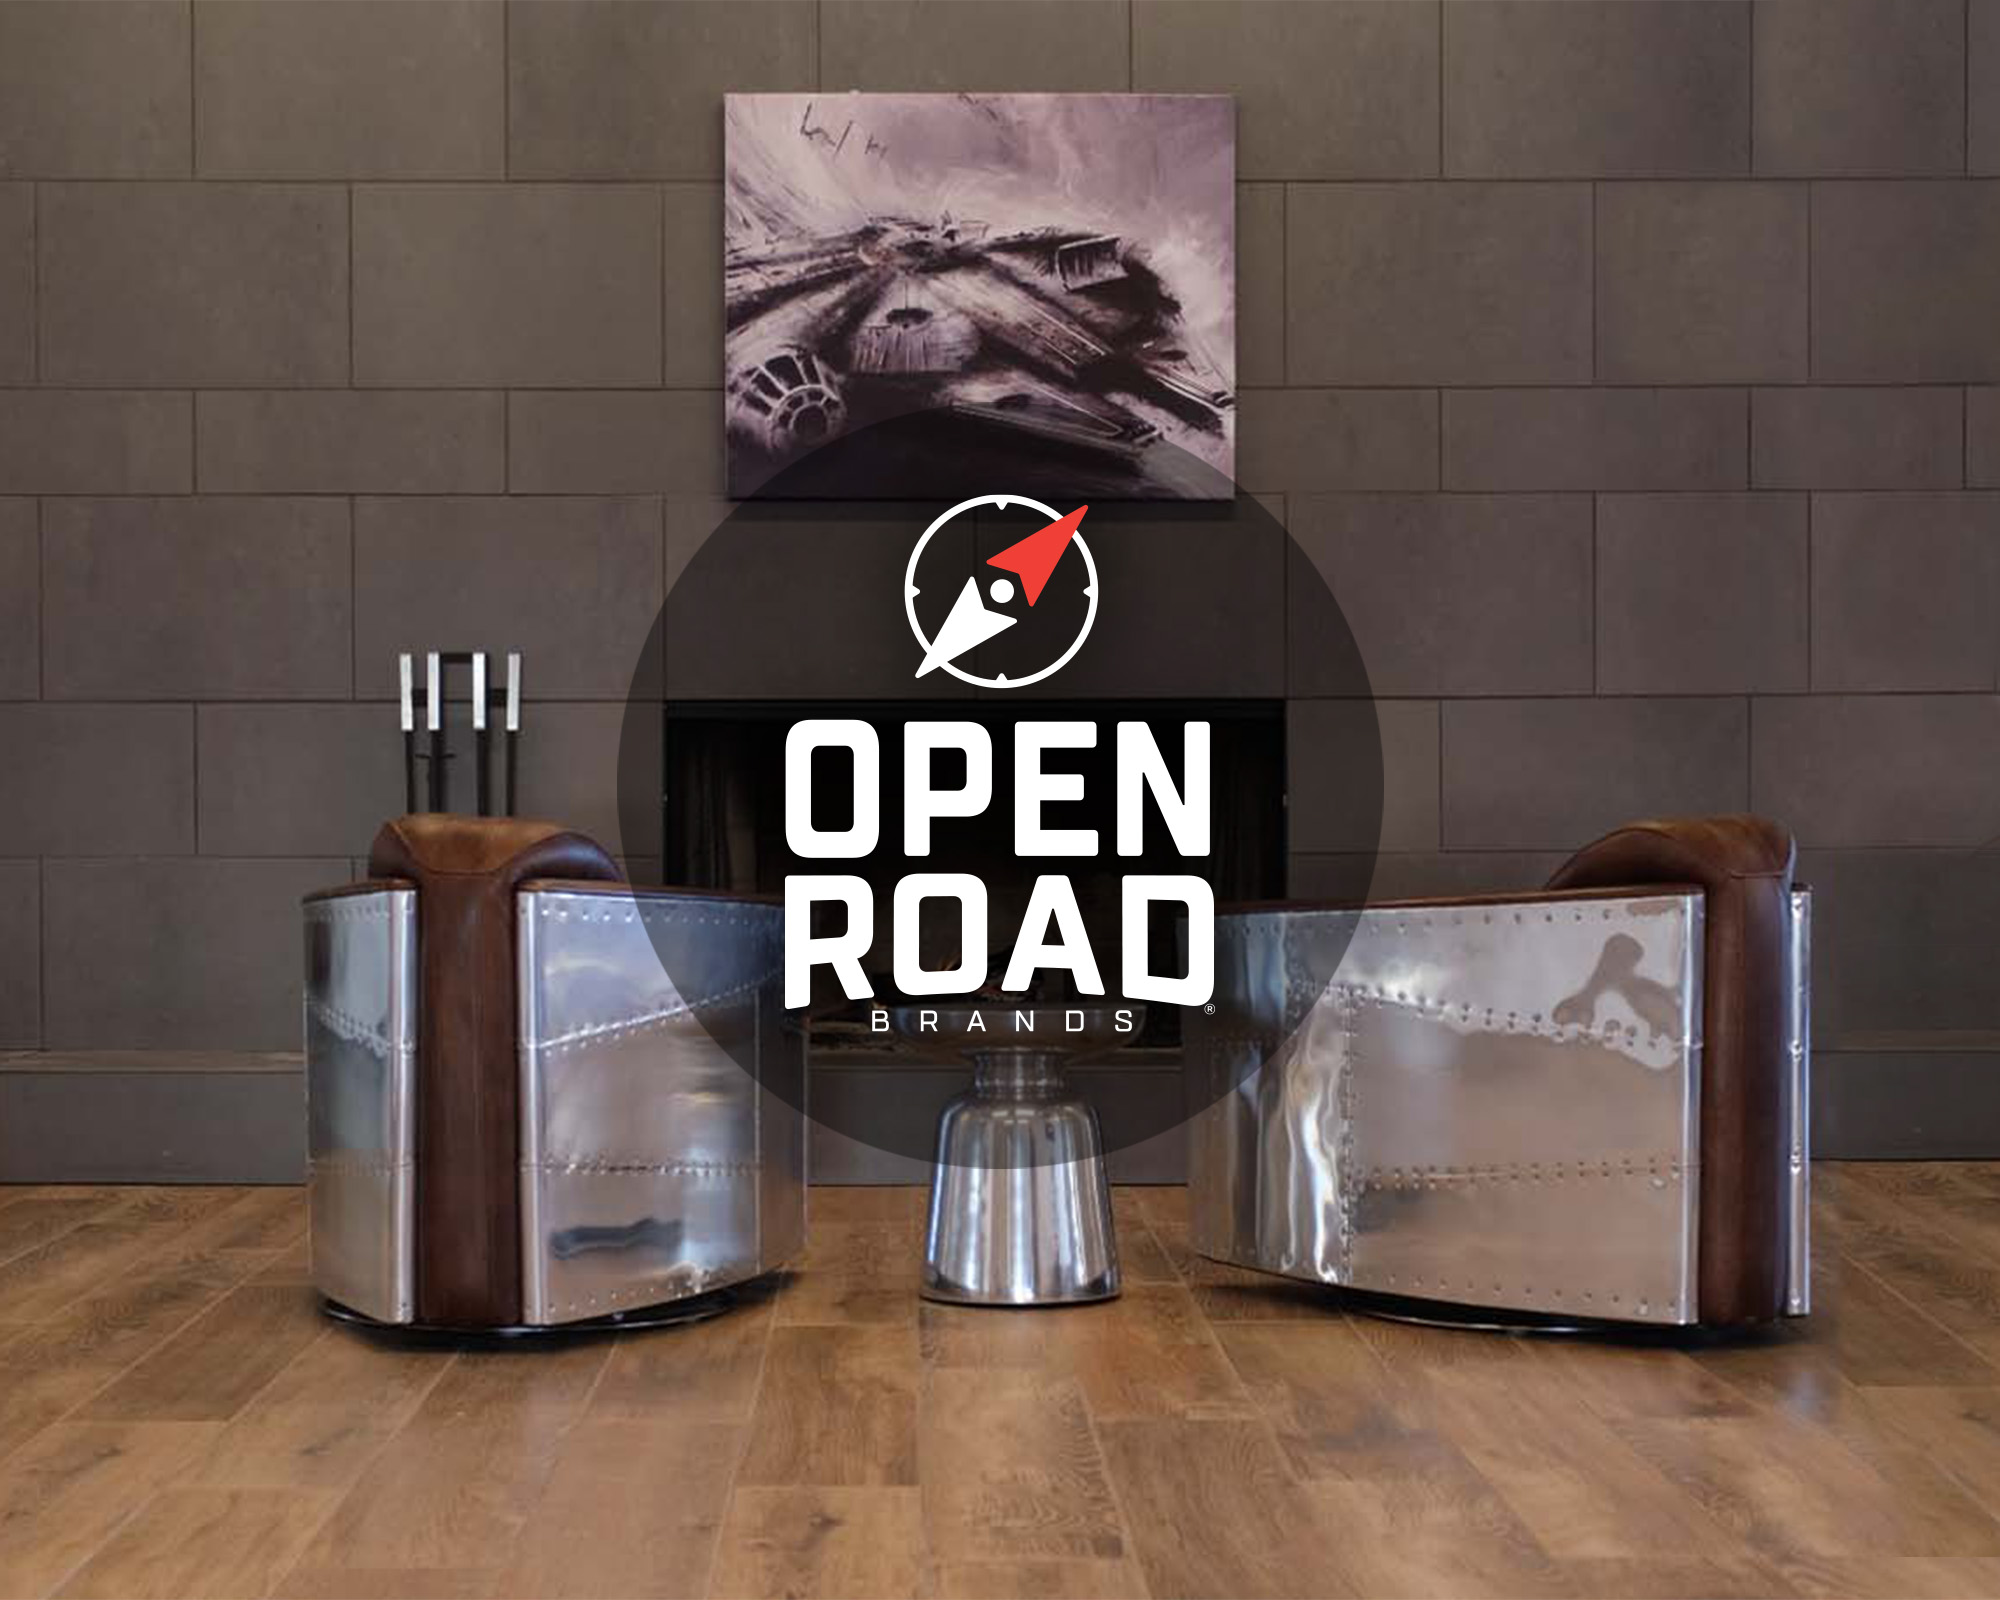 Open Road Brands 8-Bit Road Sign at Von Maur